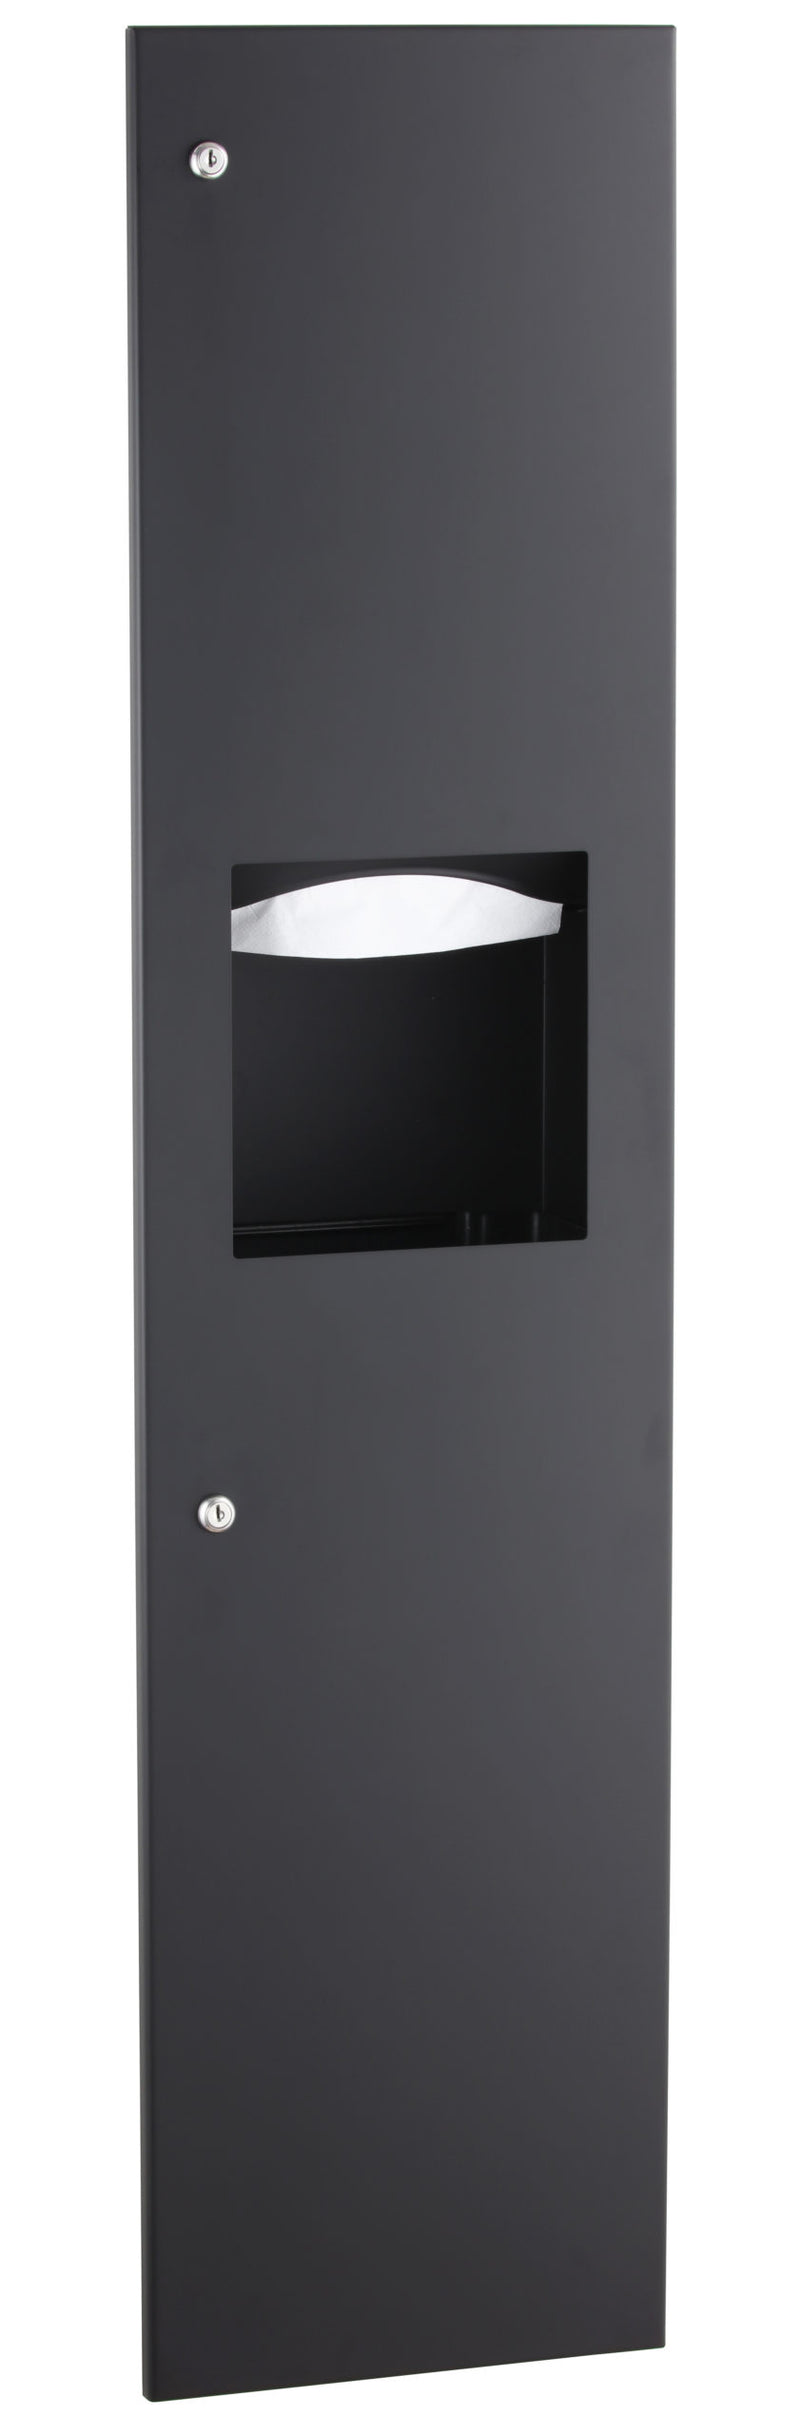 Bobrick B-38034.mblk - TrimLineSeries™ Recessed Paper Towel Dispenser/Waste Receptacle, Matte Black